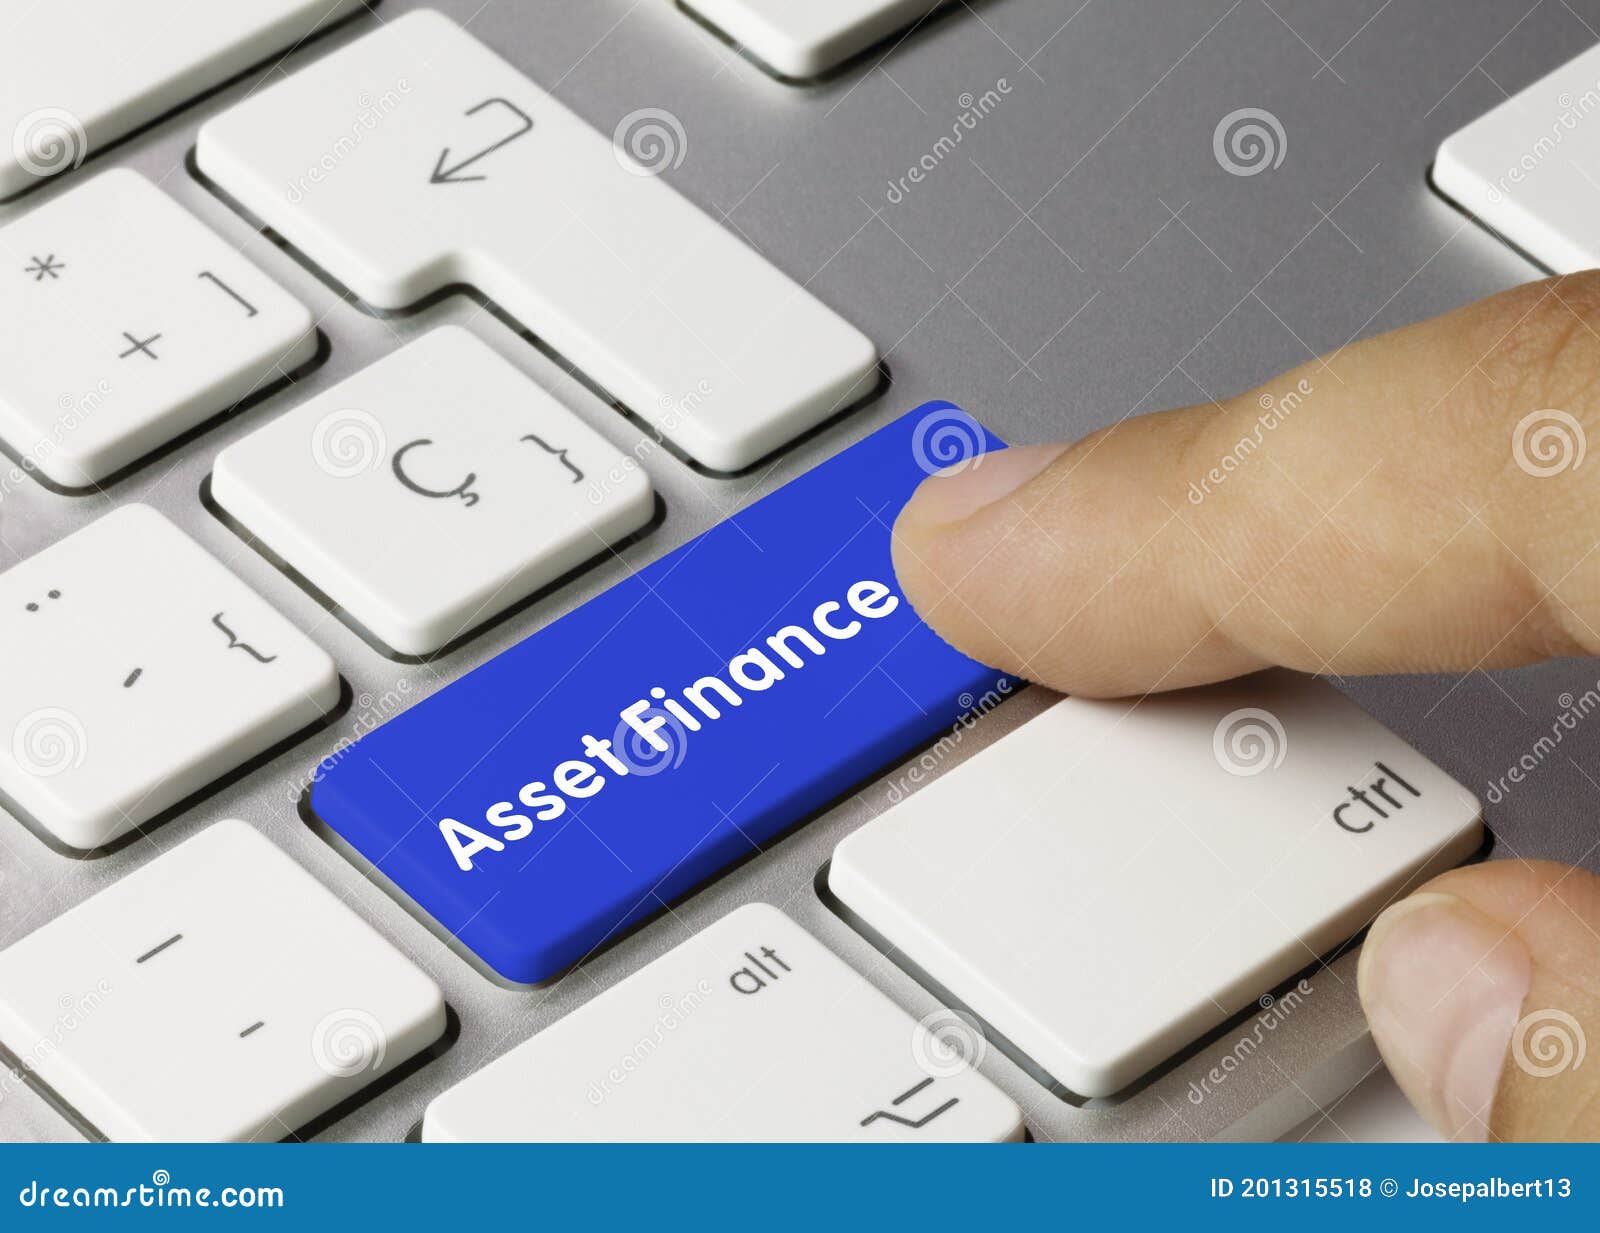 asset finance - inscription on blue keyboard key